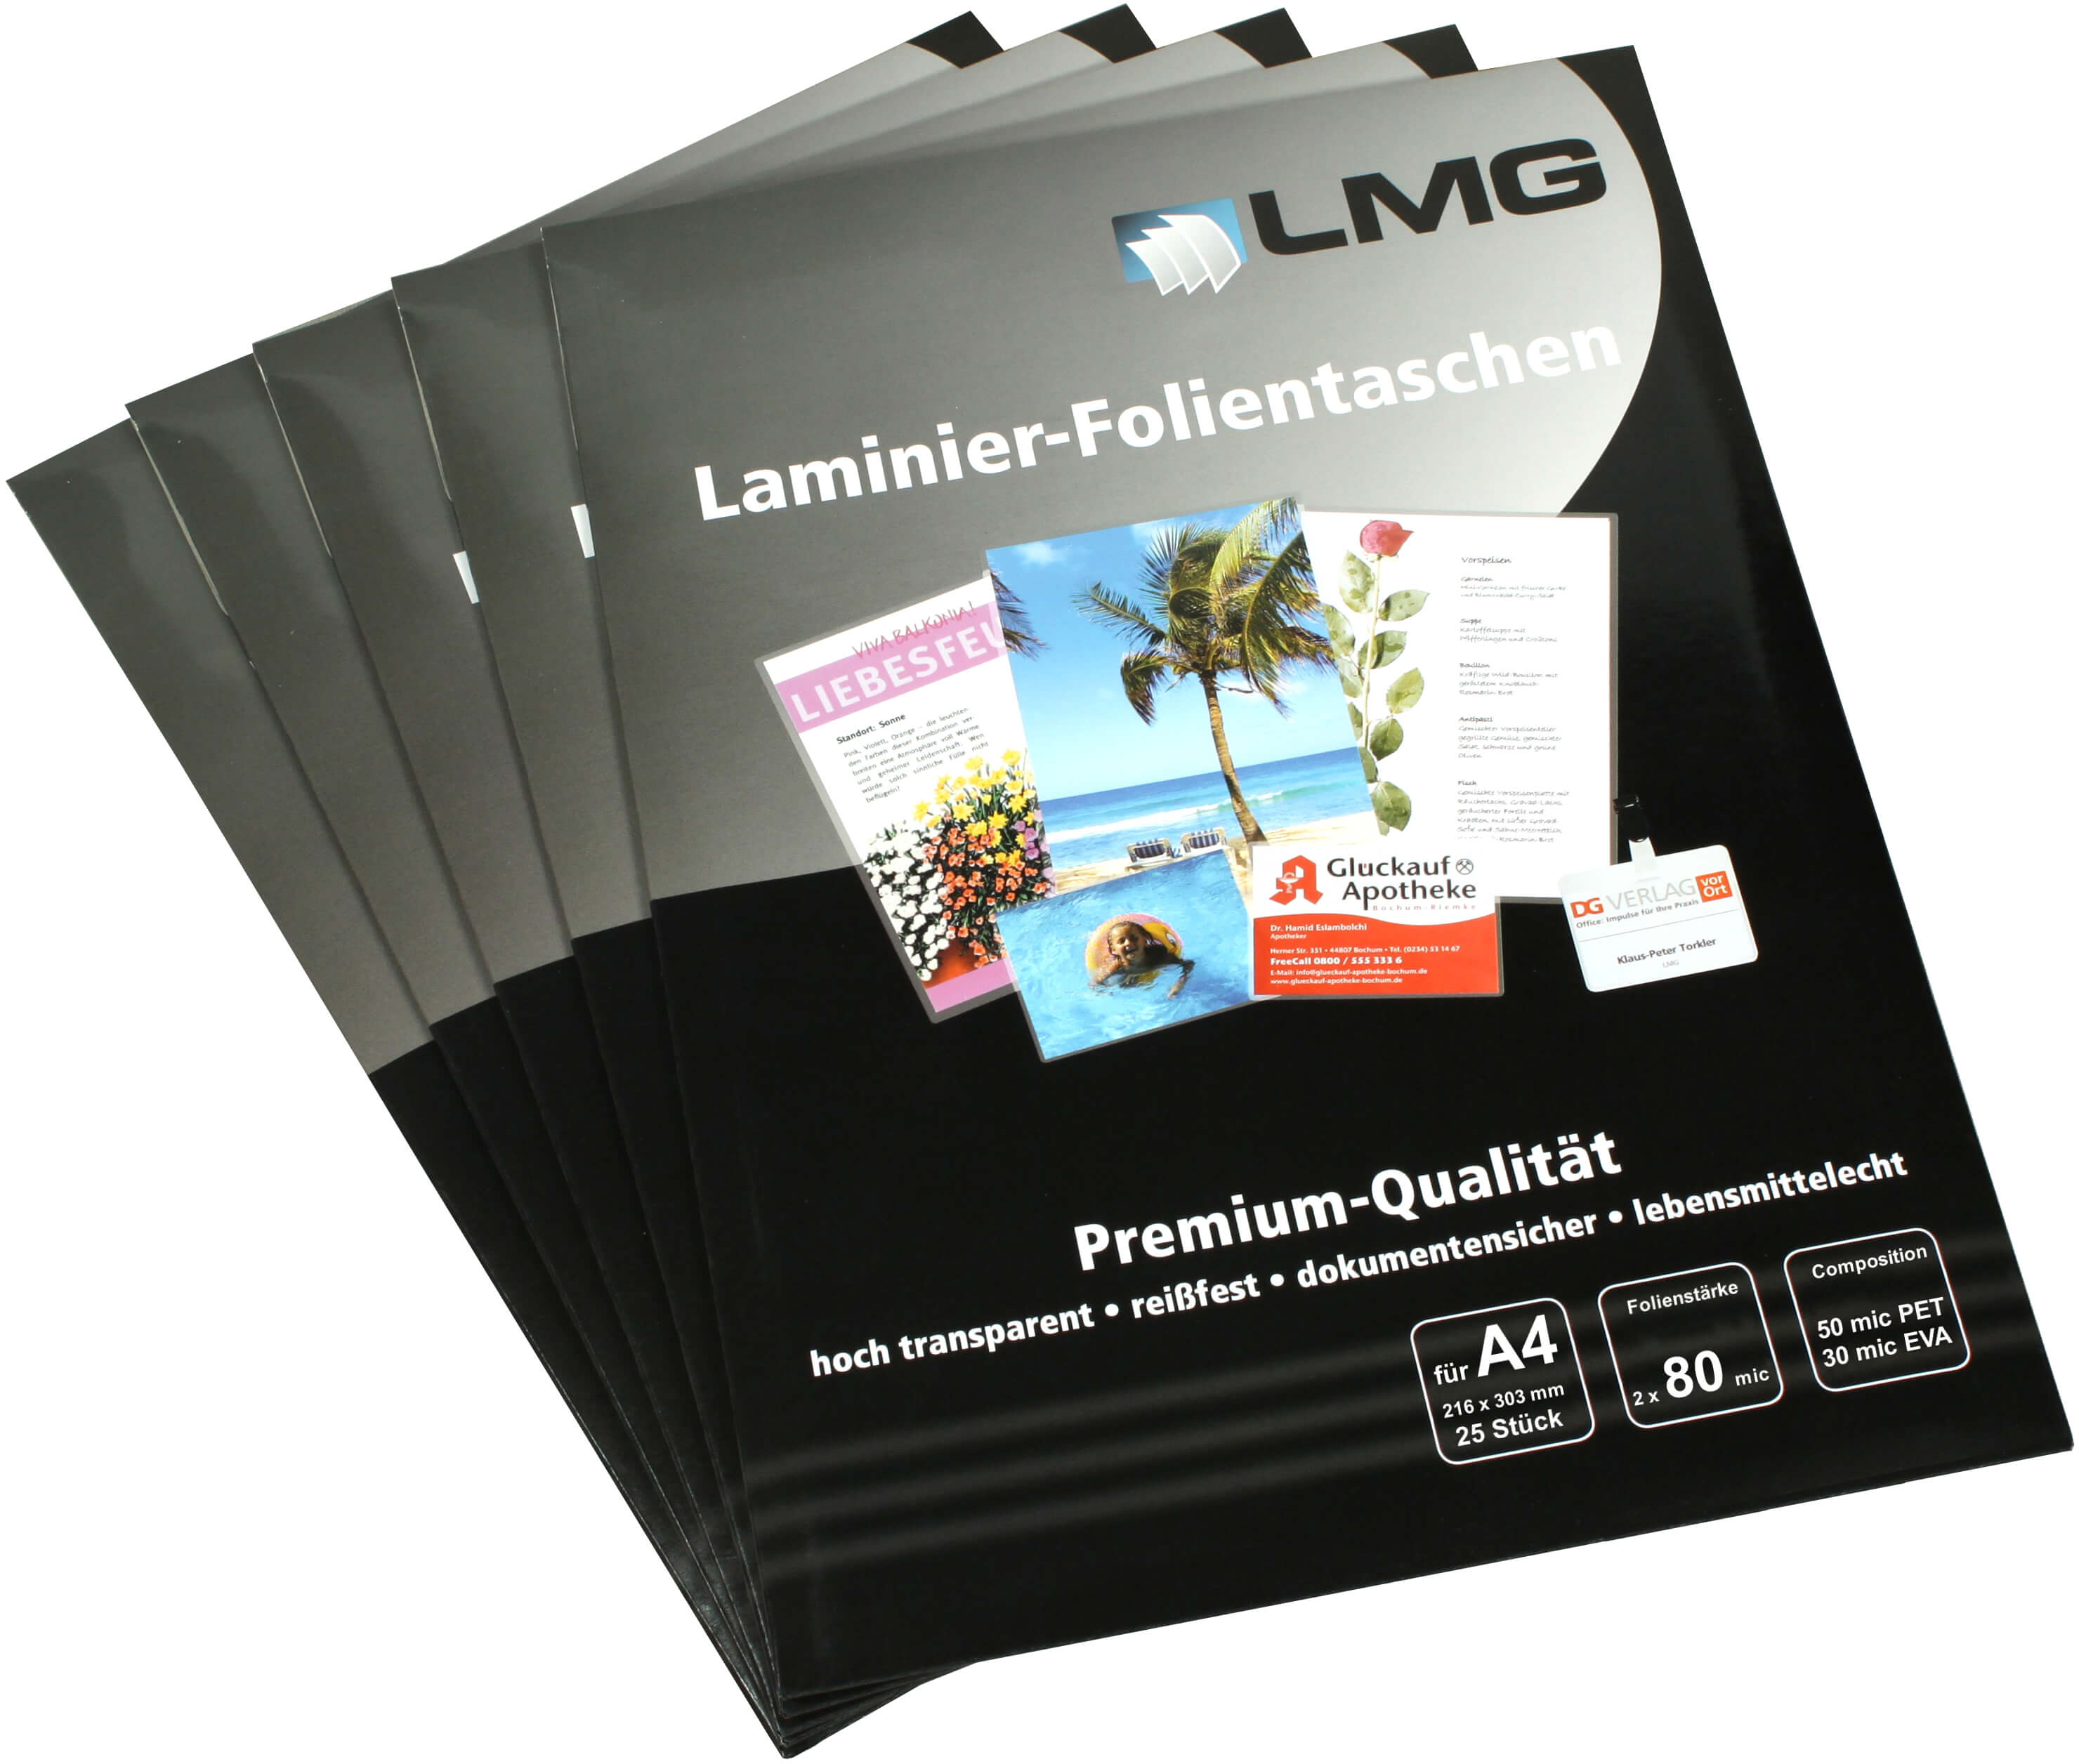 Laminierfolien A4 (216 x 303 mm), 2 x 80 mic, LMG Premium | Bestnr. LMGA4-80-25